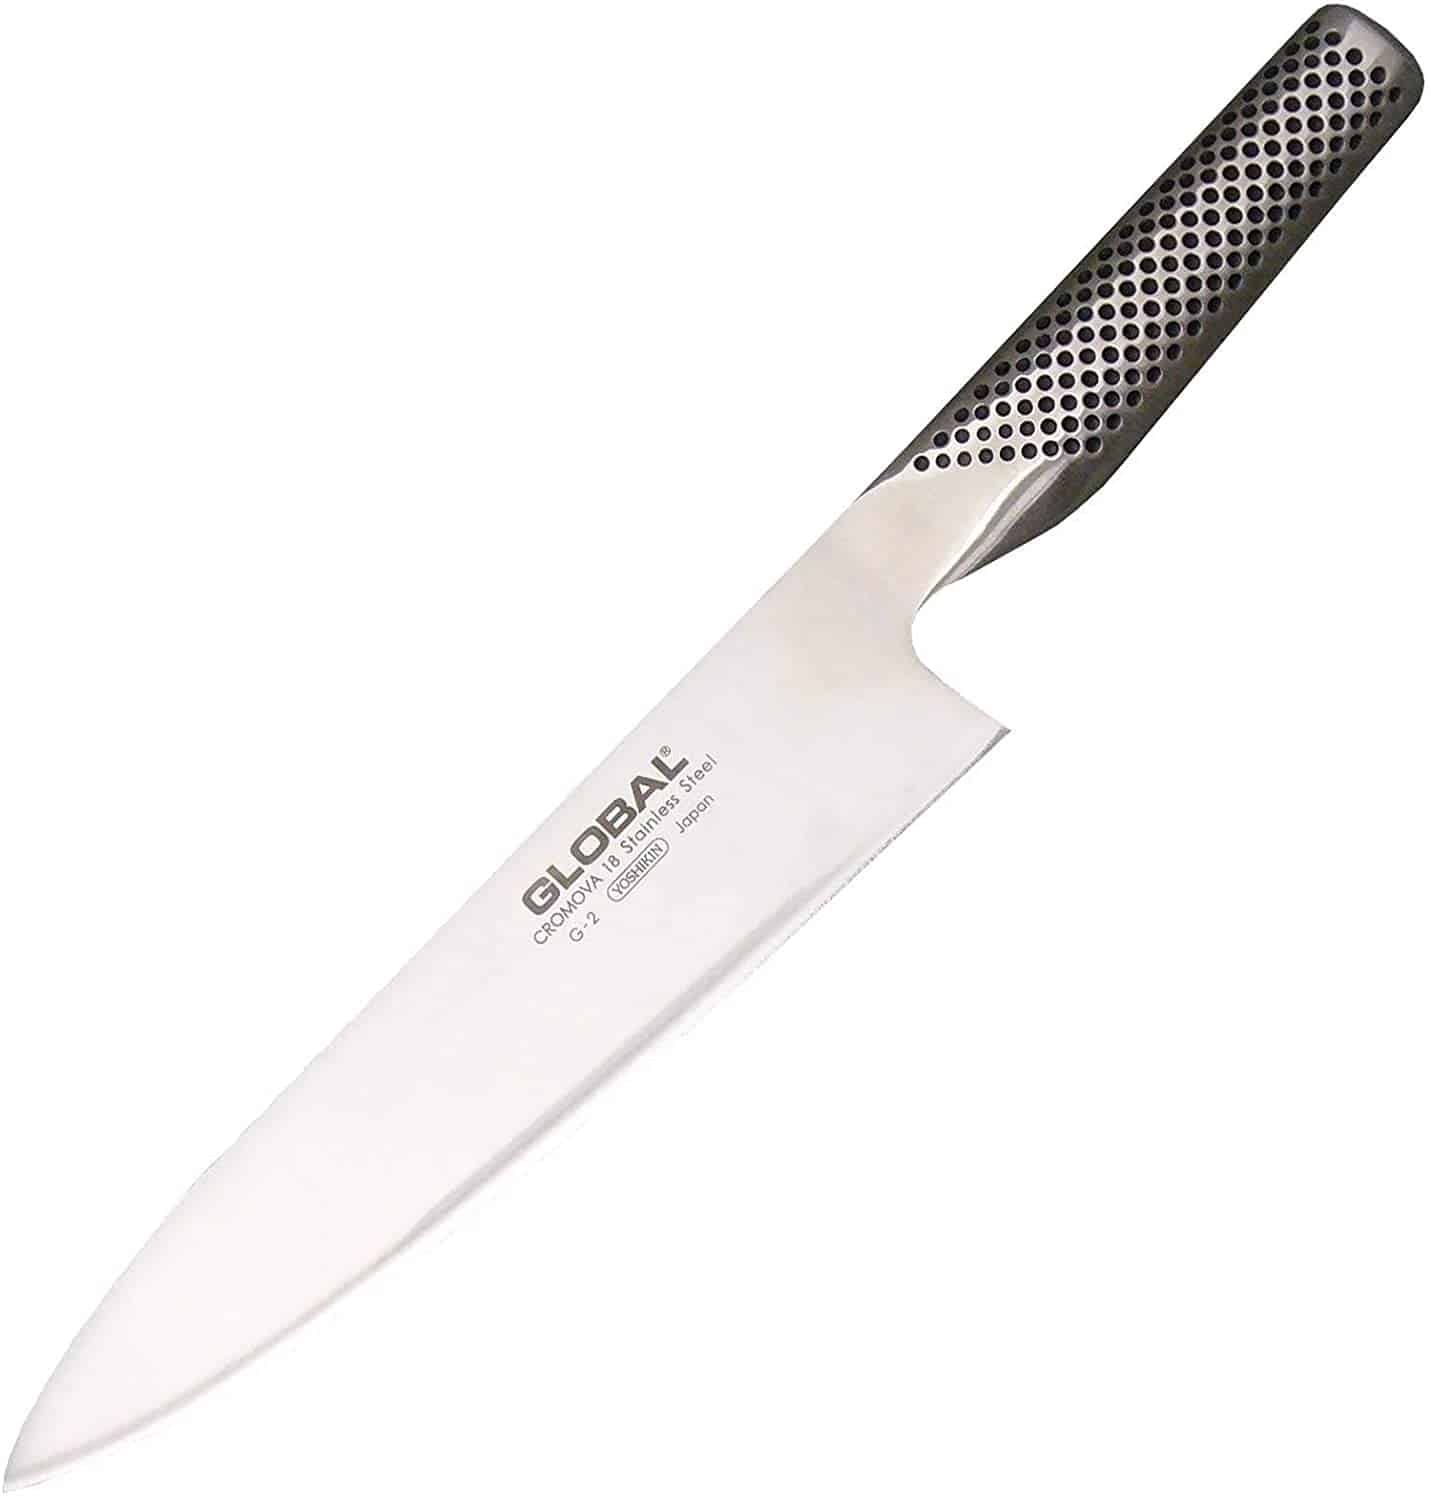 Global G-2 Classic Chef Knife